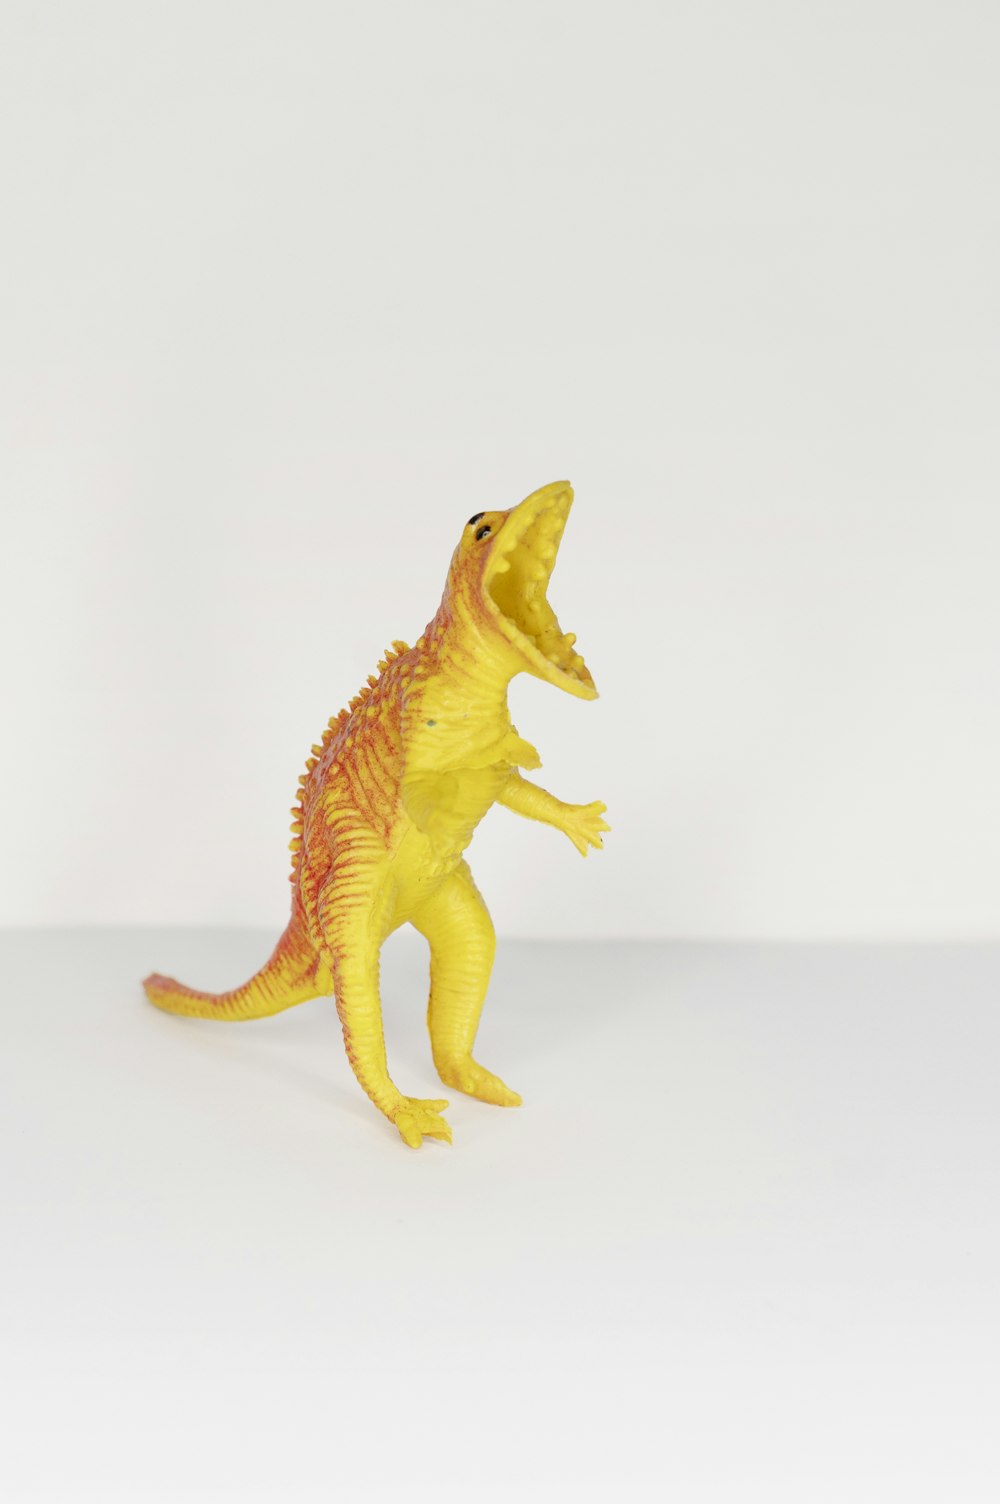 黄色とオレンジ色の恐竜のおもちゃ